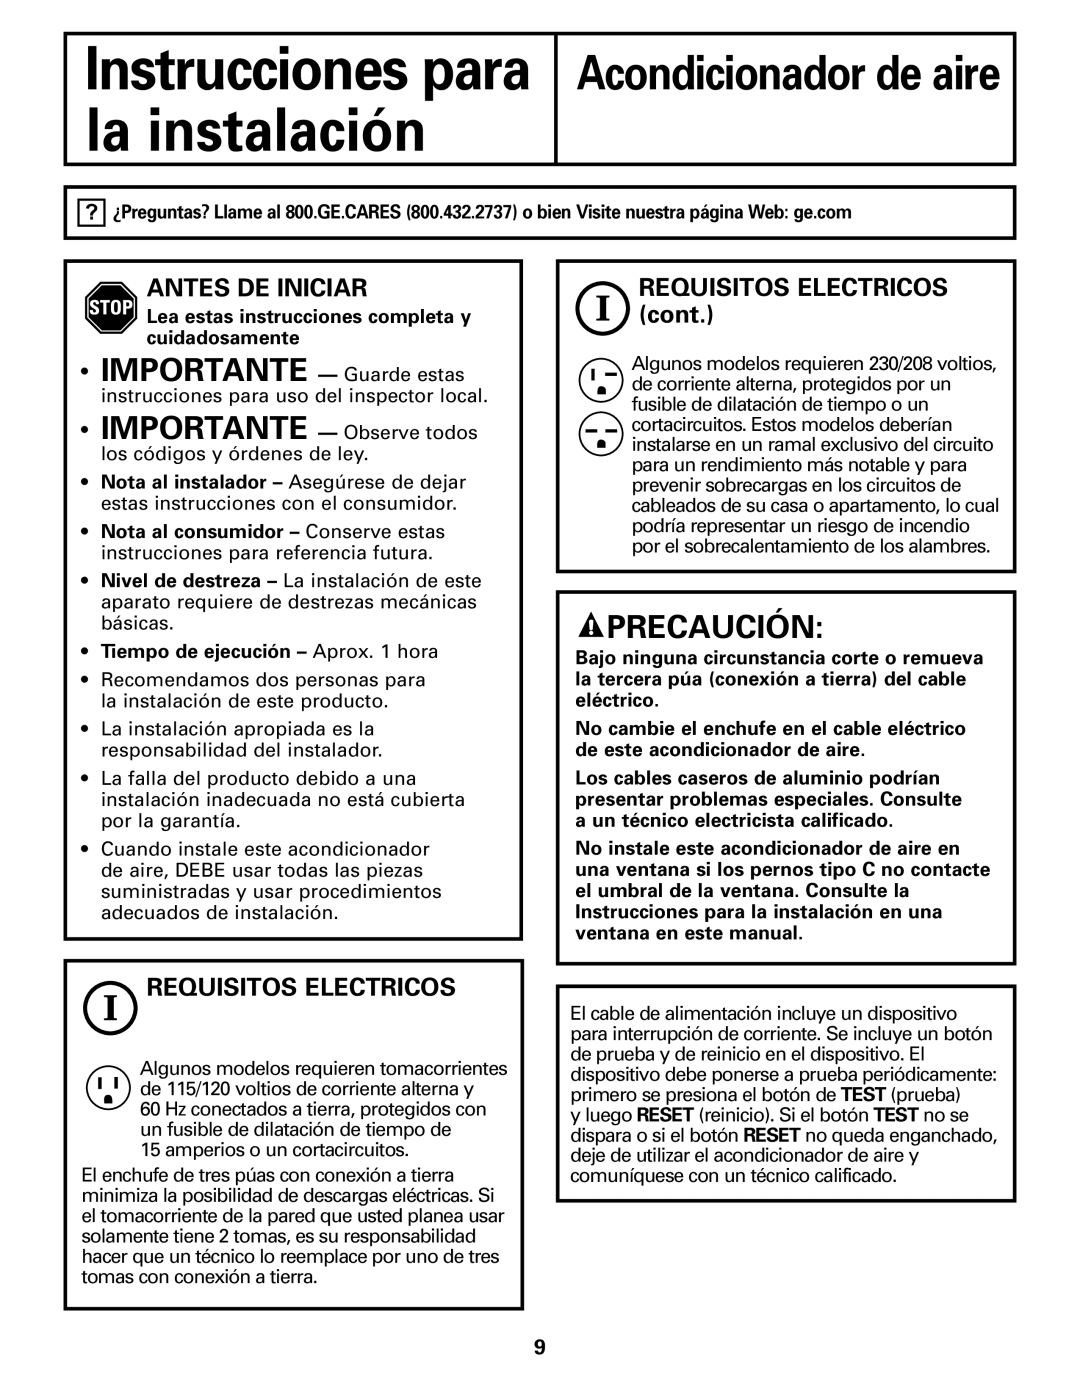 GE ASQ18, ASM14* Precaución, Antes De Iniciar, Requisitos Electricos, REQUISITOS ELECTRICOS cont, Acondicionador de aire 